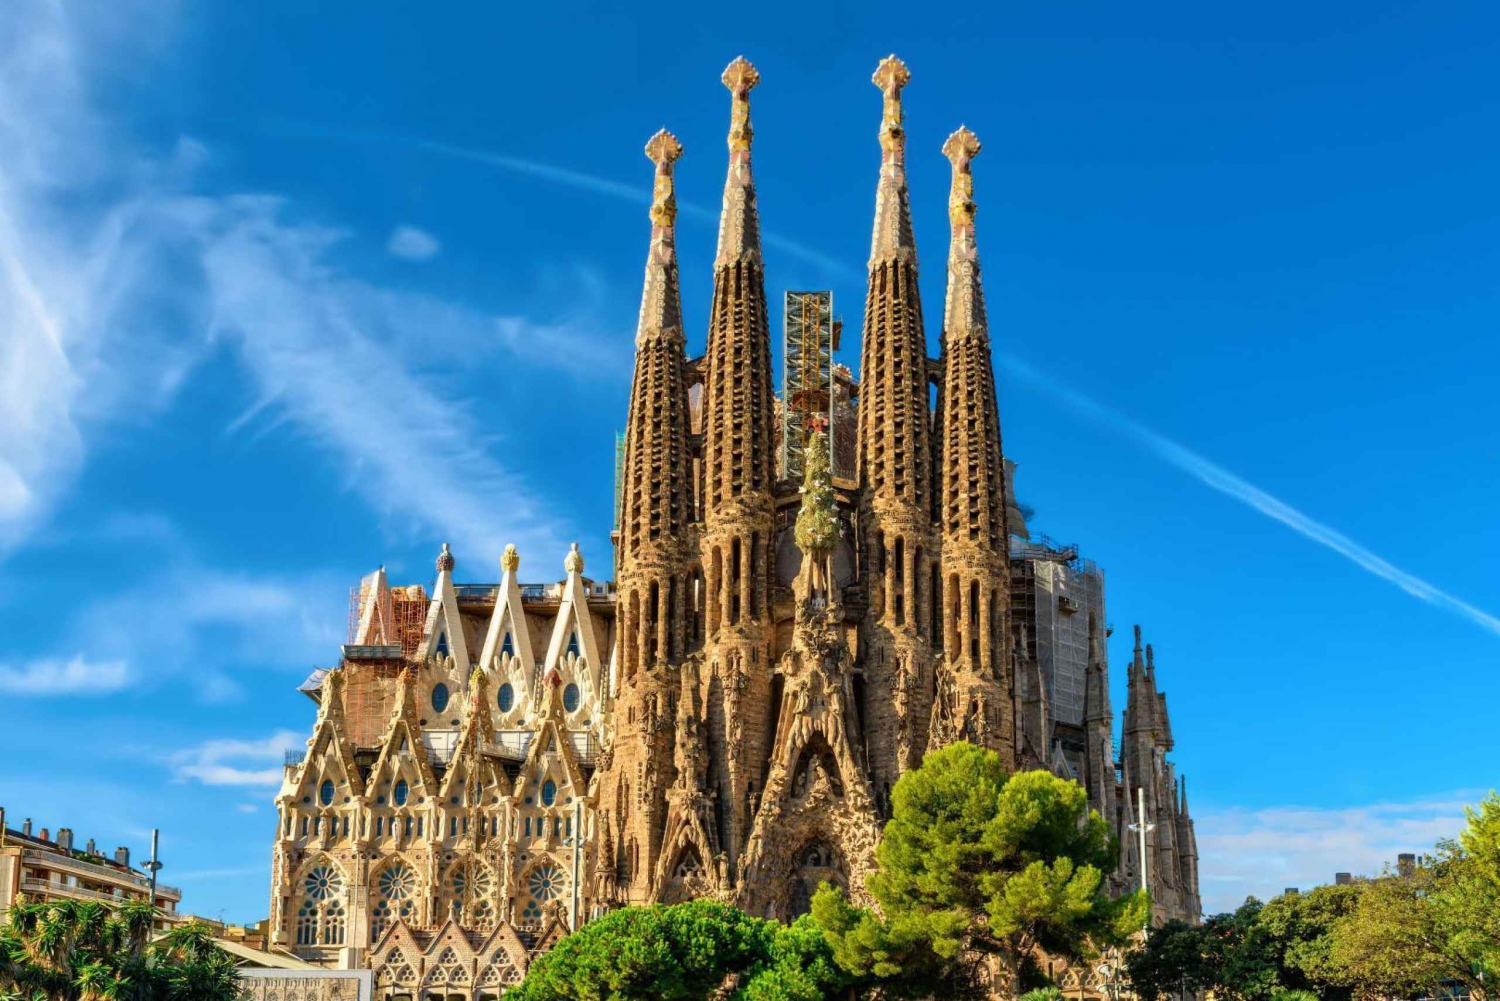 Barcelona: Dzielnica Gotycka i La Sagrada Familia - wycieczka na segwayu